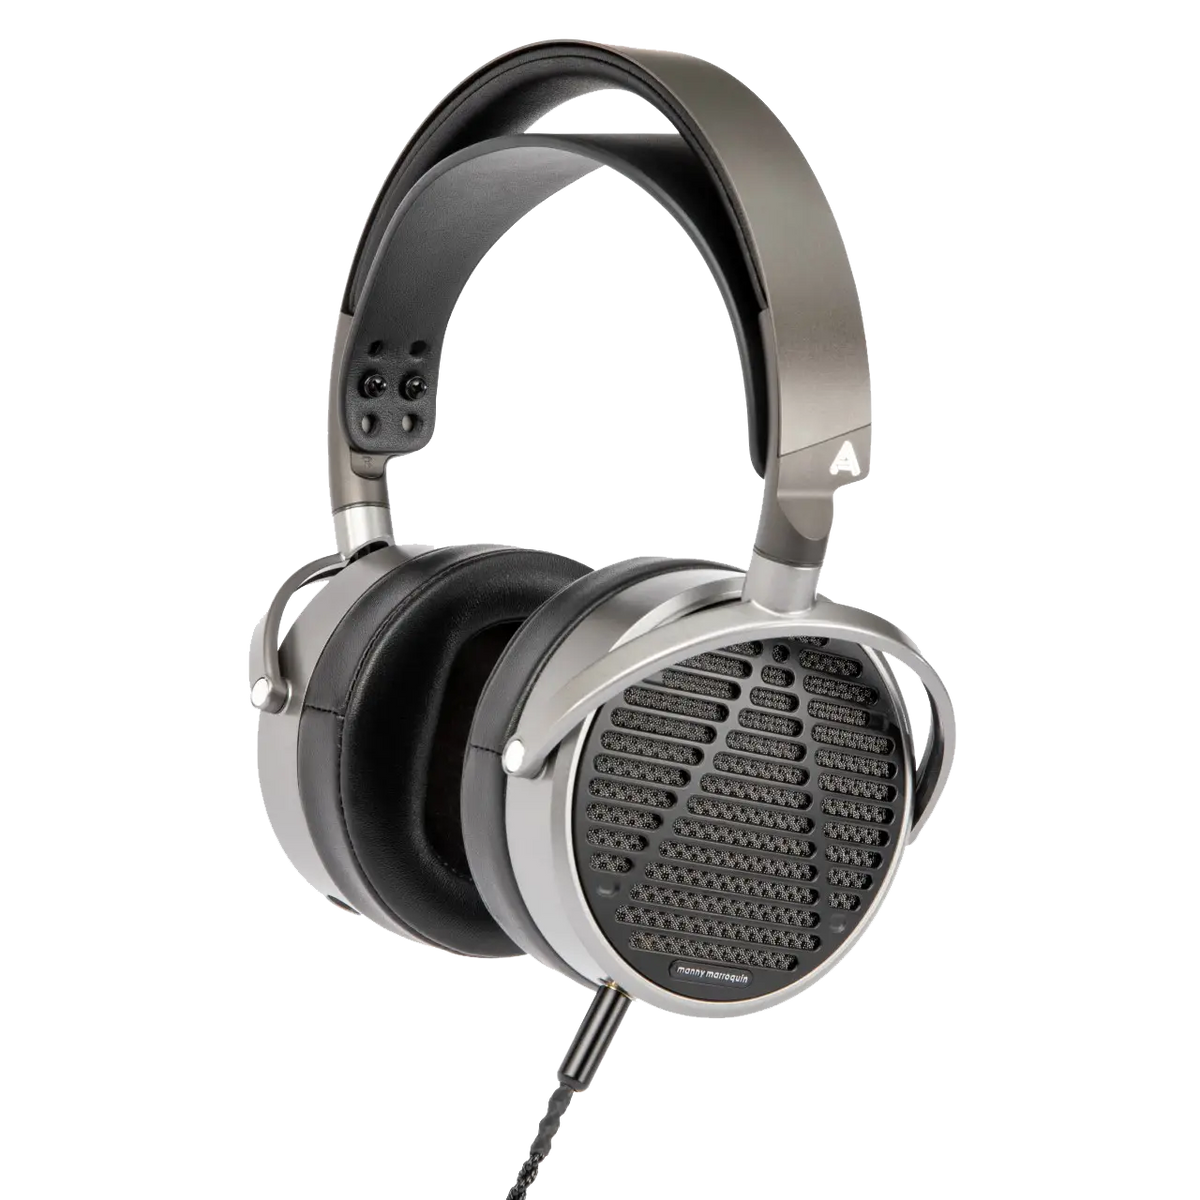 Audeze MM-100 - Open Back Headphones with Detachable Cable